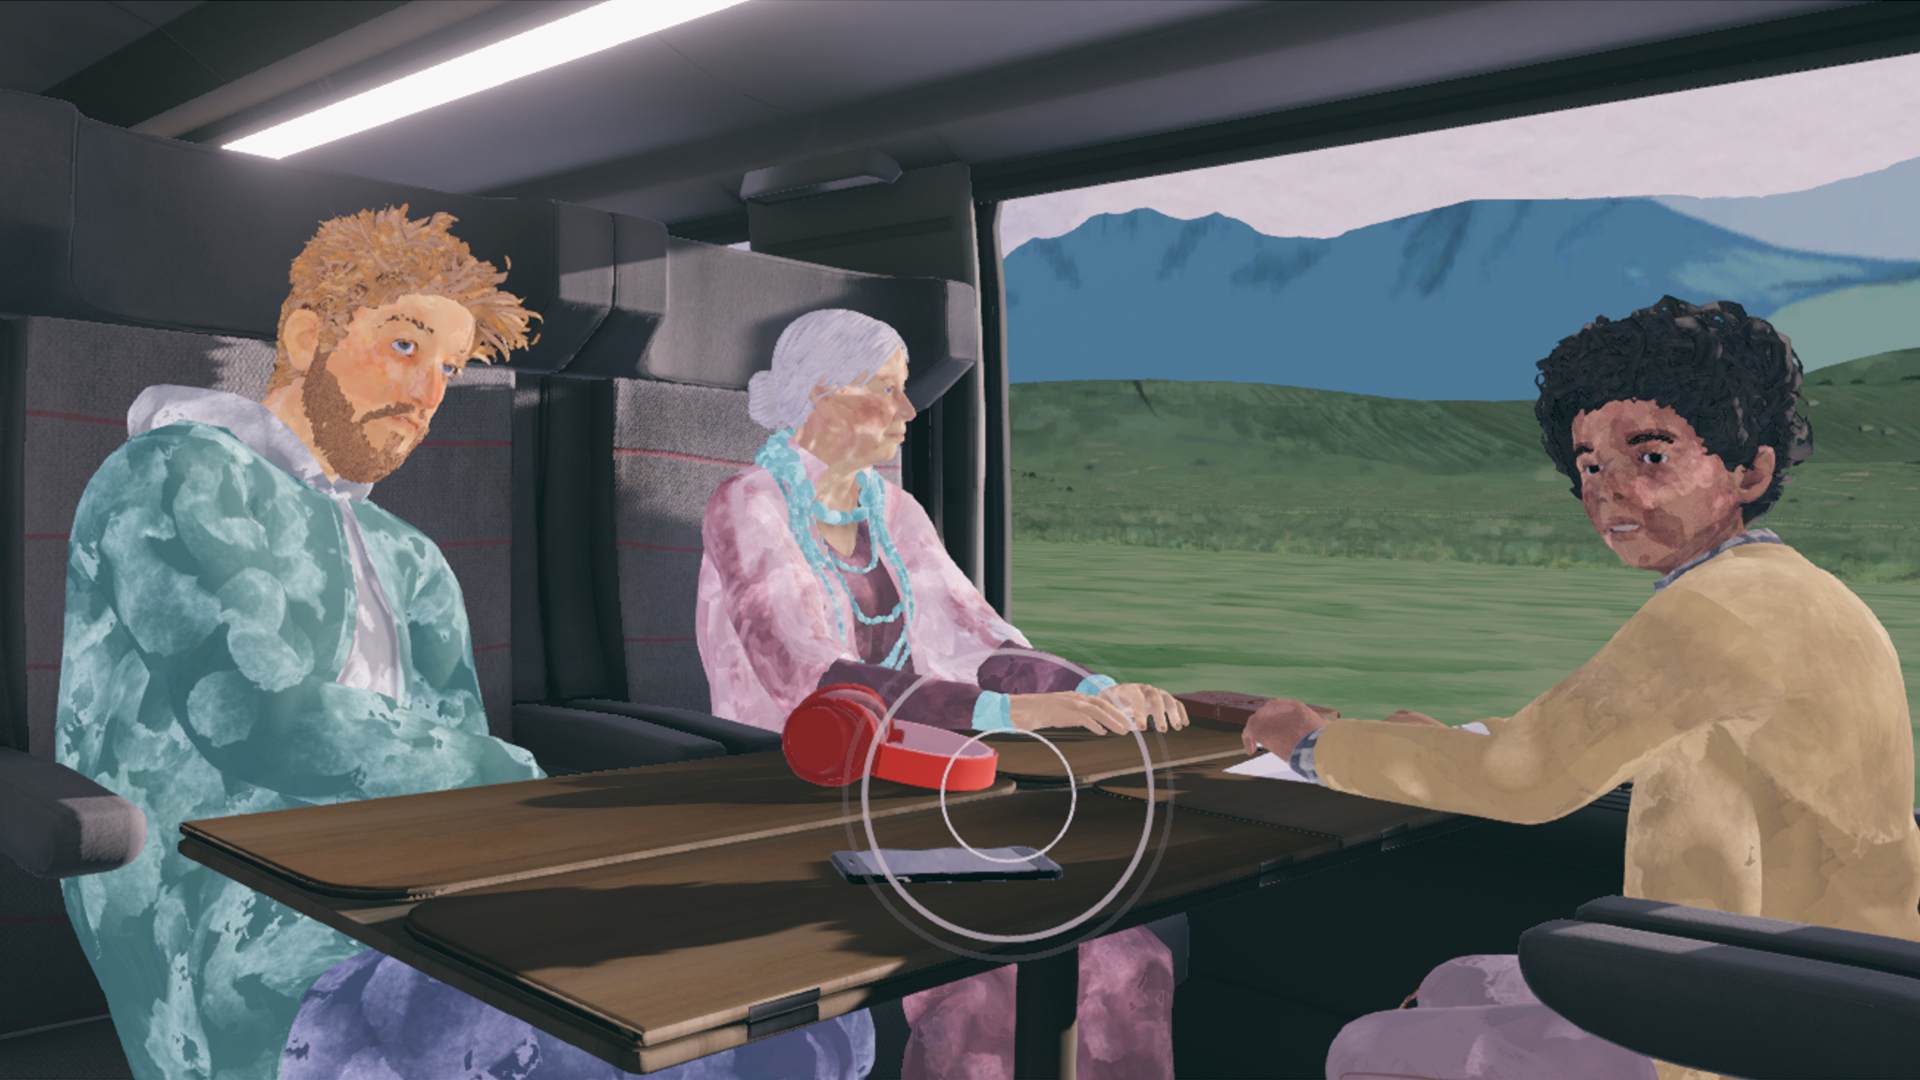 The Passengers_screenshot_interactivity.jpg